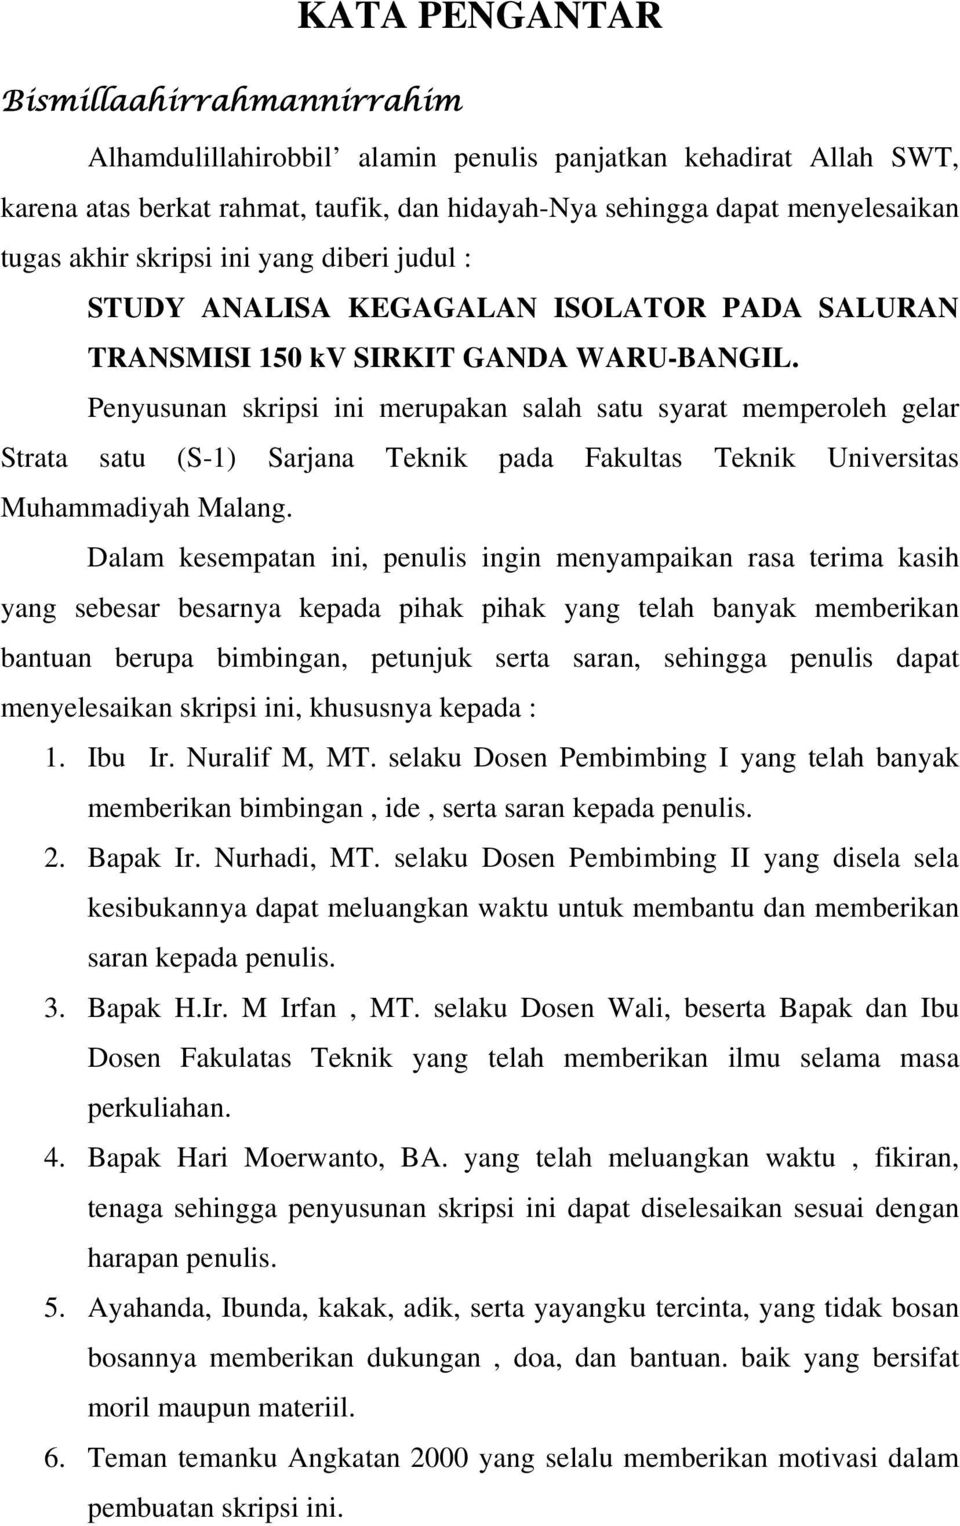 Penyusunan skripsi ini merupakan salah satu syarat memperoleh gelar Strata satu (S-1) Sarjana Teknik pada Fakultas Teknik Universitas Muhammadiyah Malang.